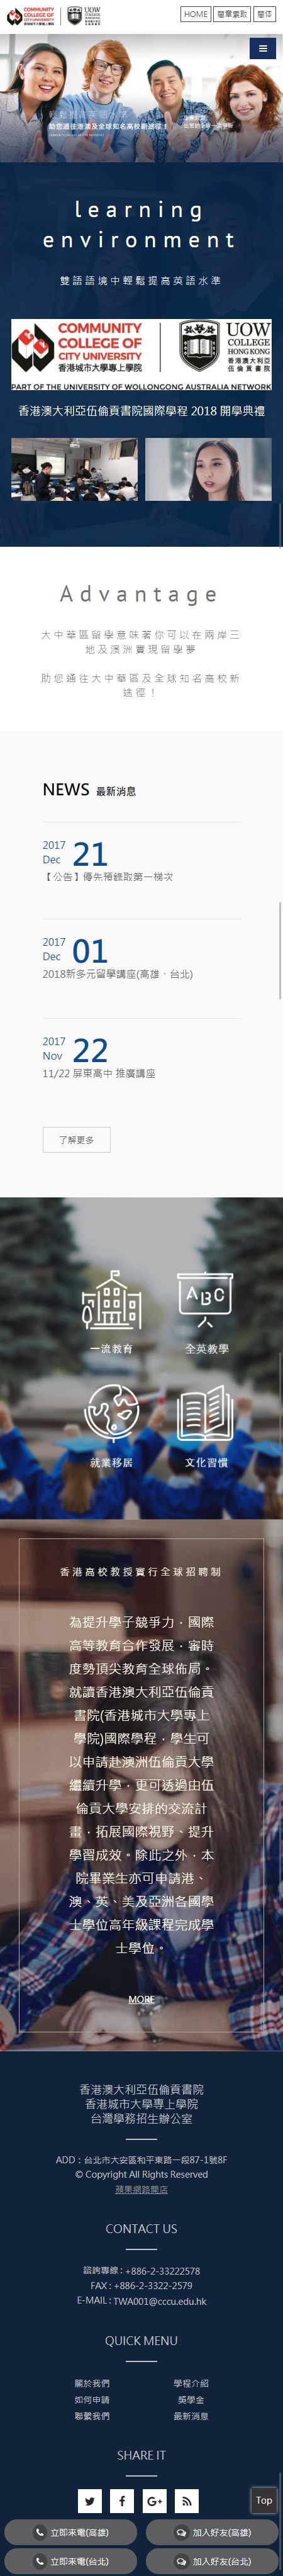 香港城市大學招生網站-手機板縮圖